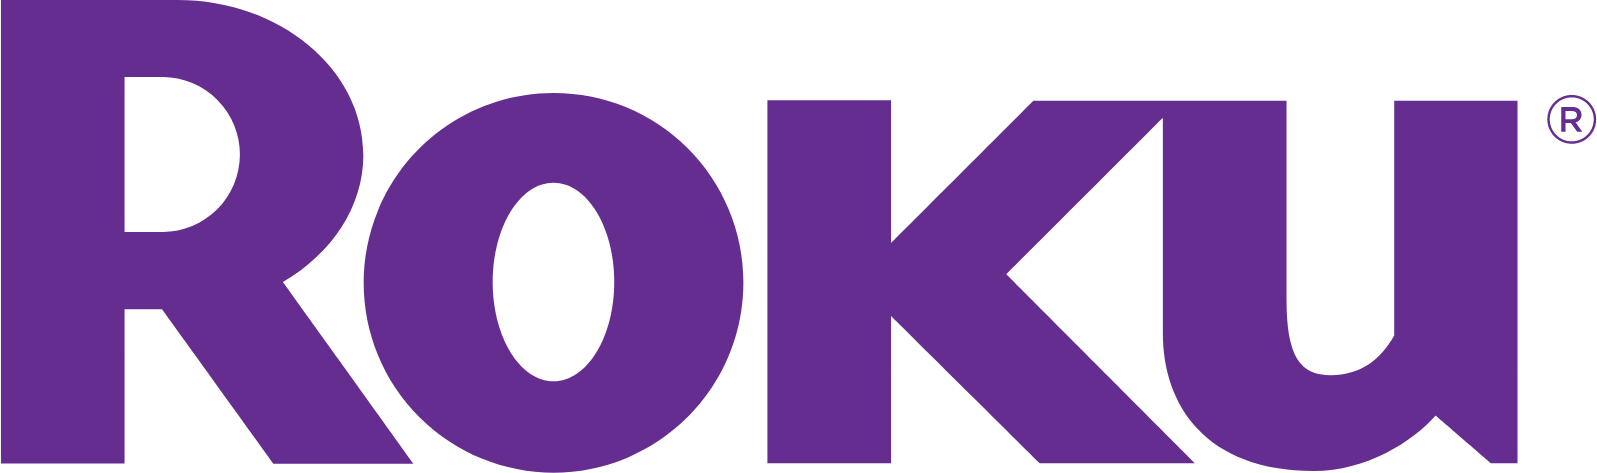 Roku logo large (transparent PNG)